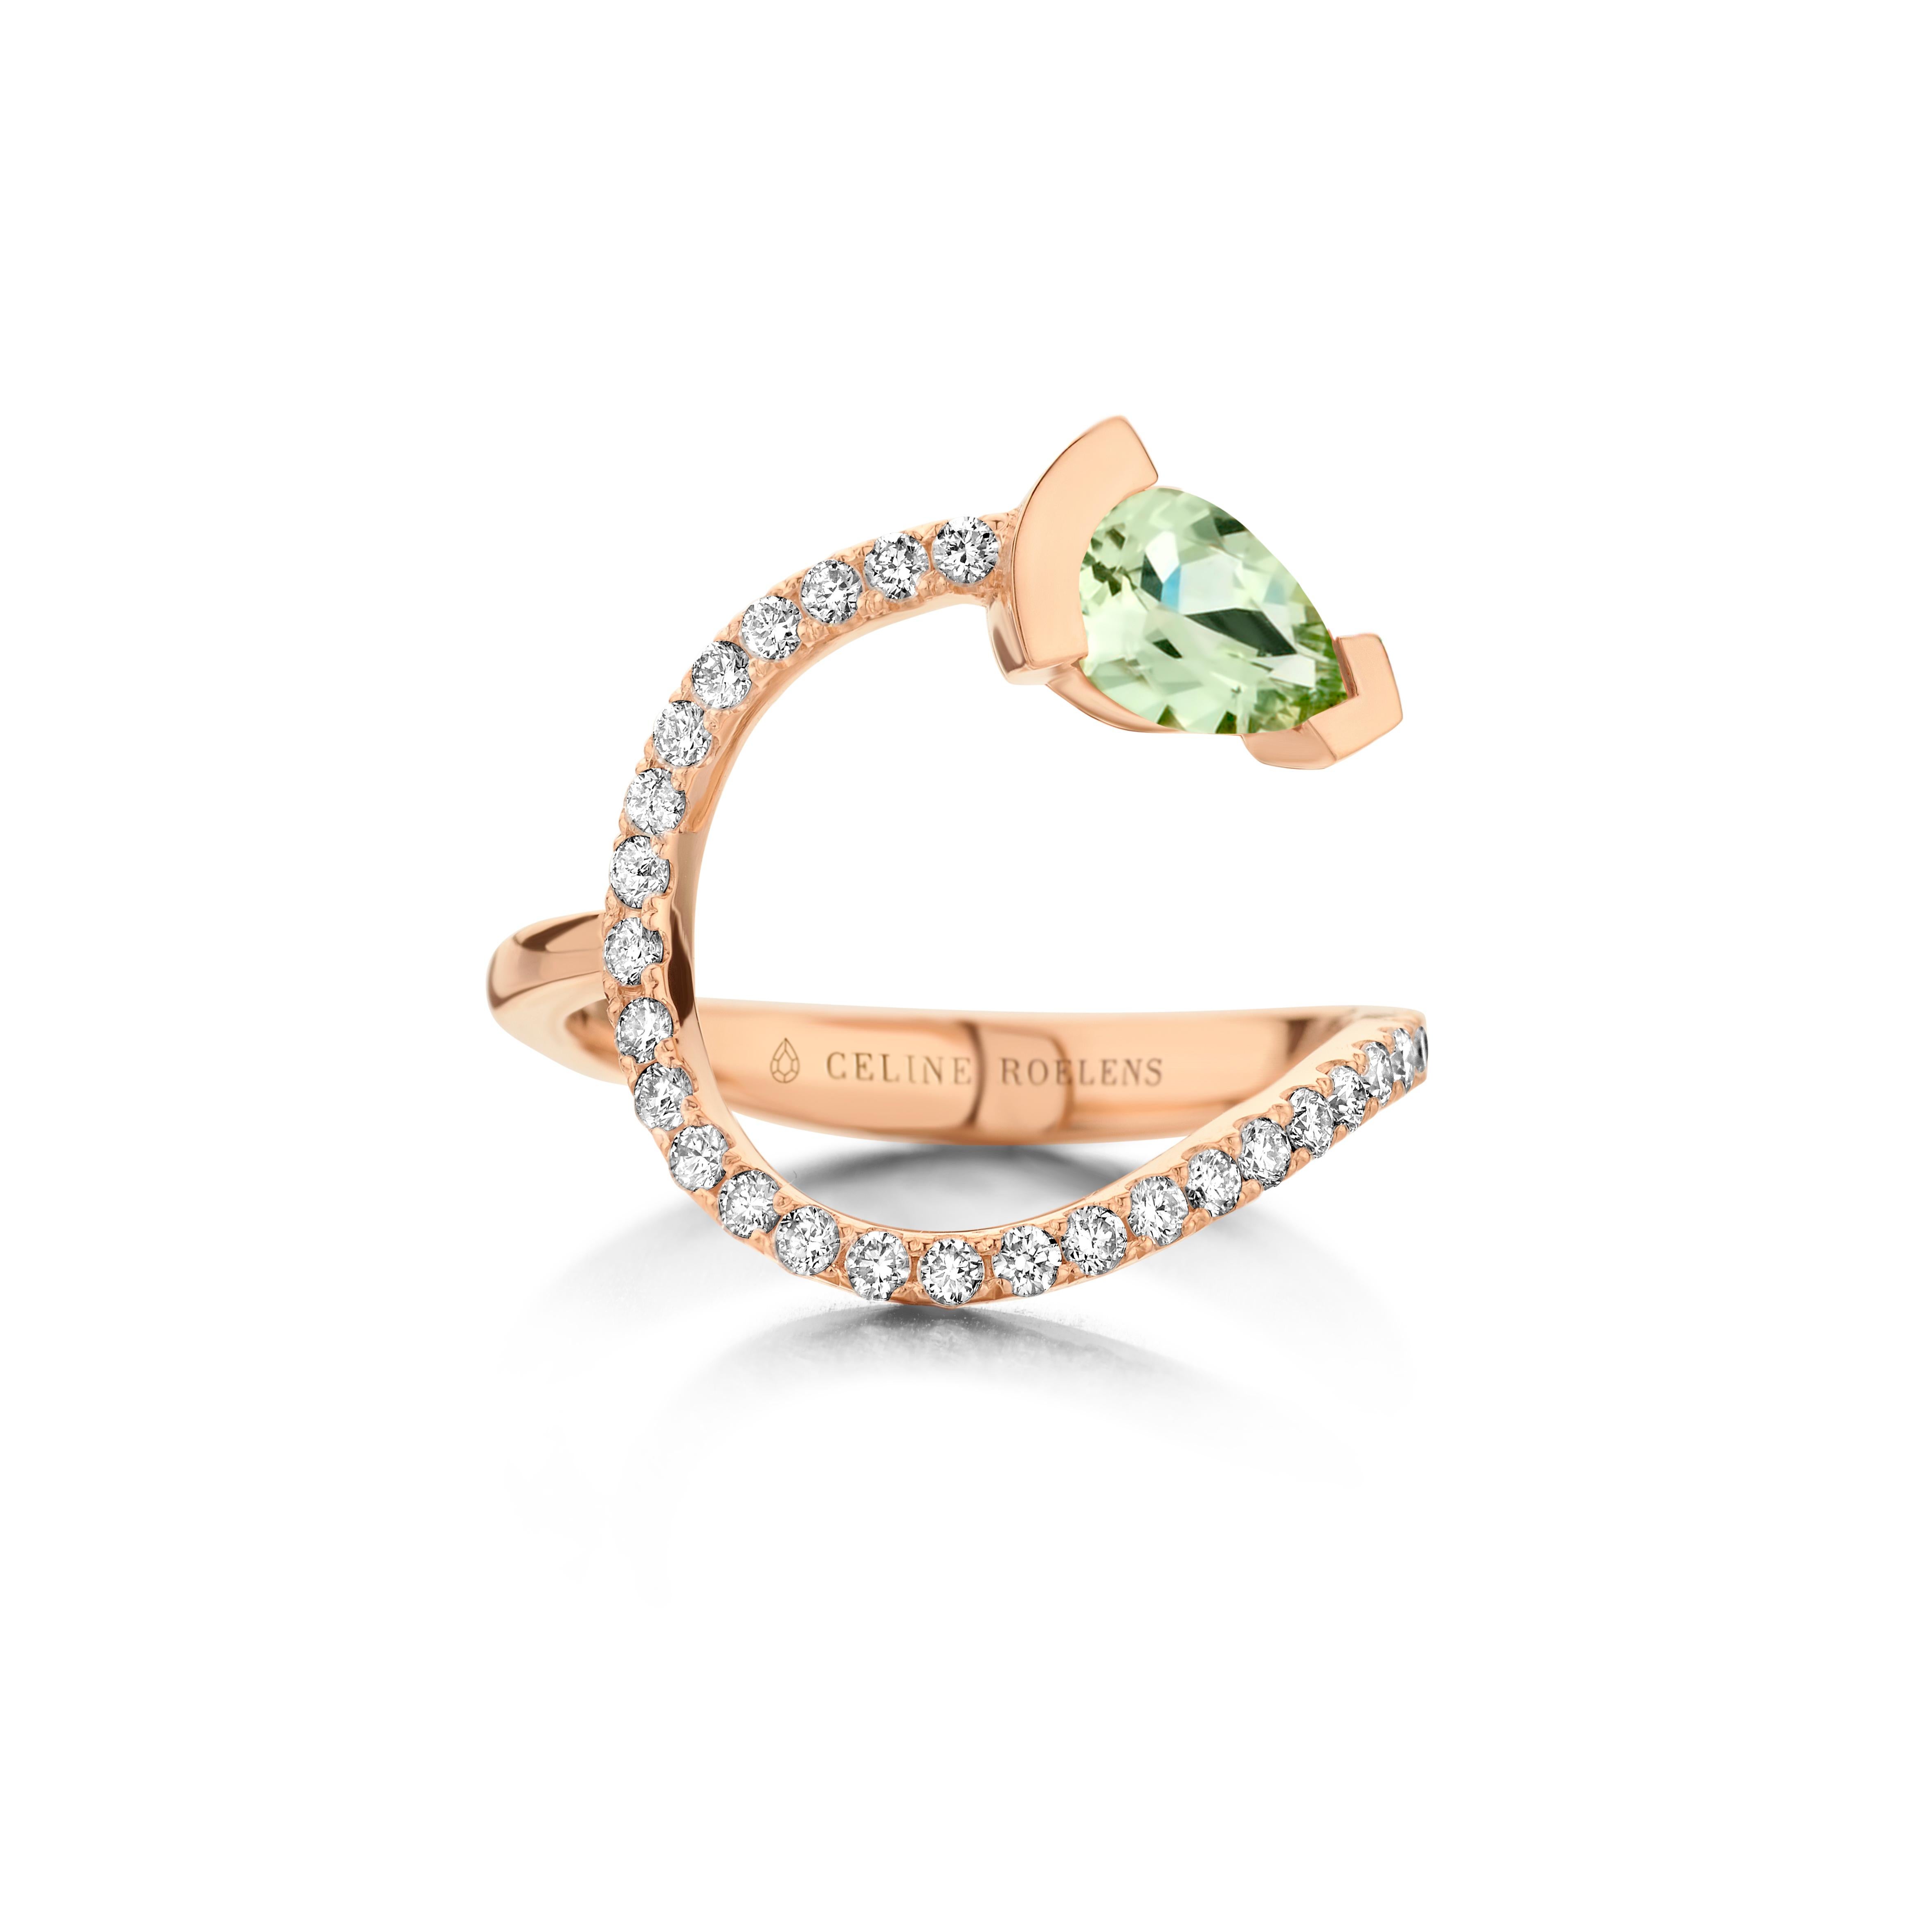 Gebogener Ring ADELINE aus 18 Karat Weißgold, besetzt mit einem birnenförmigen grünen Beryll und 0,33 Karat Diamanten mit weißem Brillantschliff - Qualität VS F.